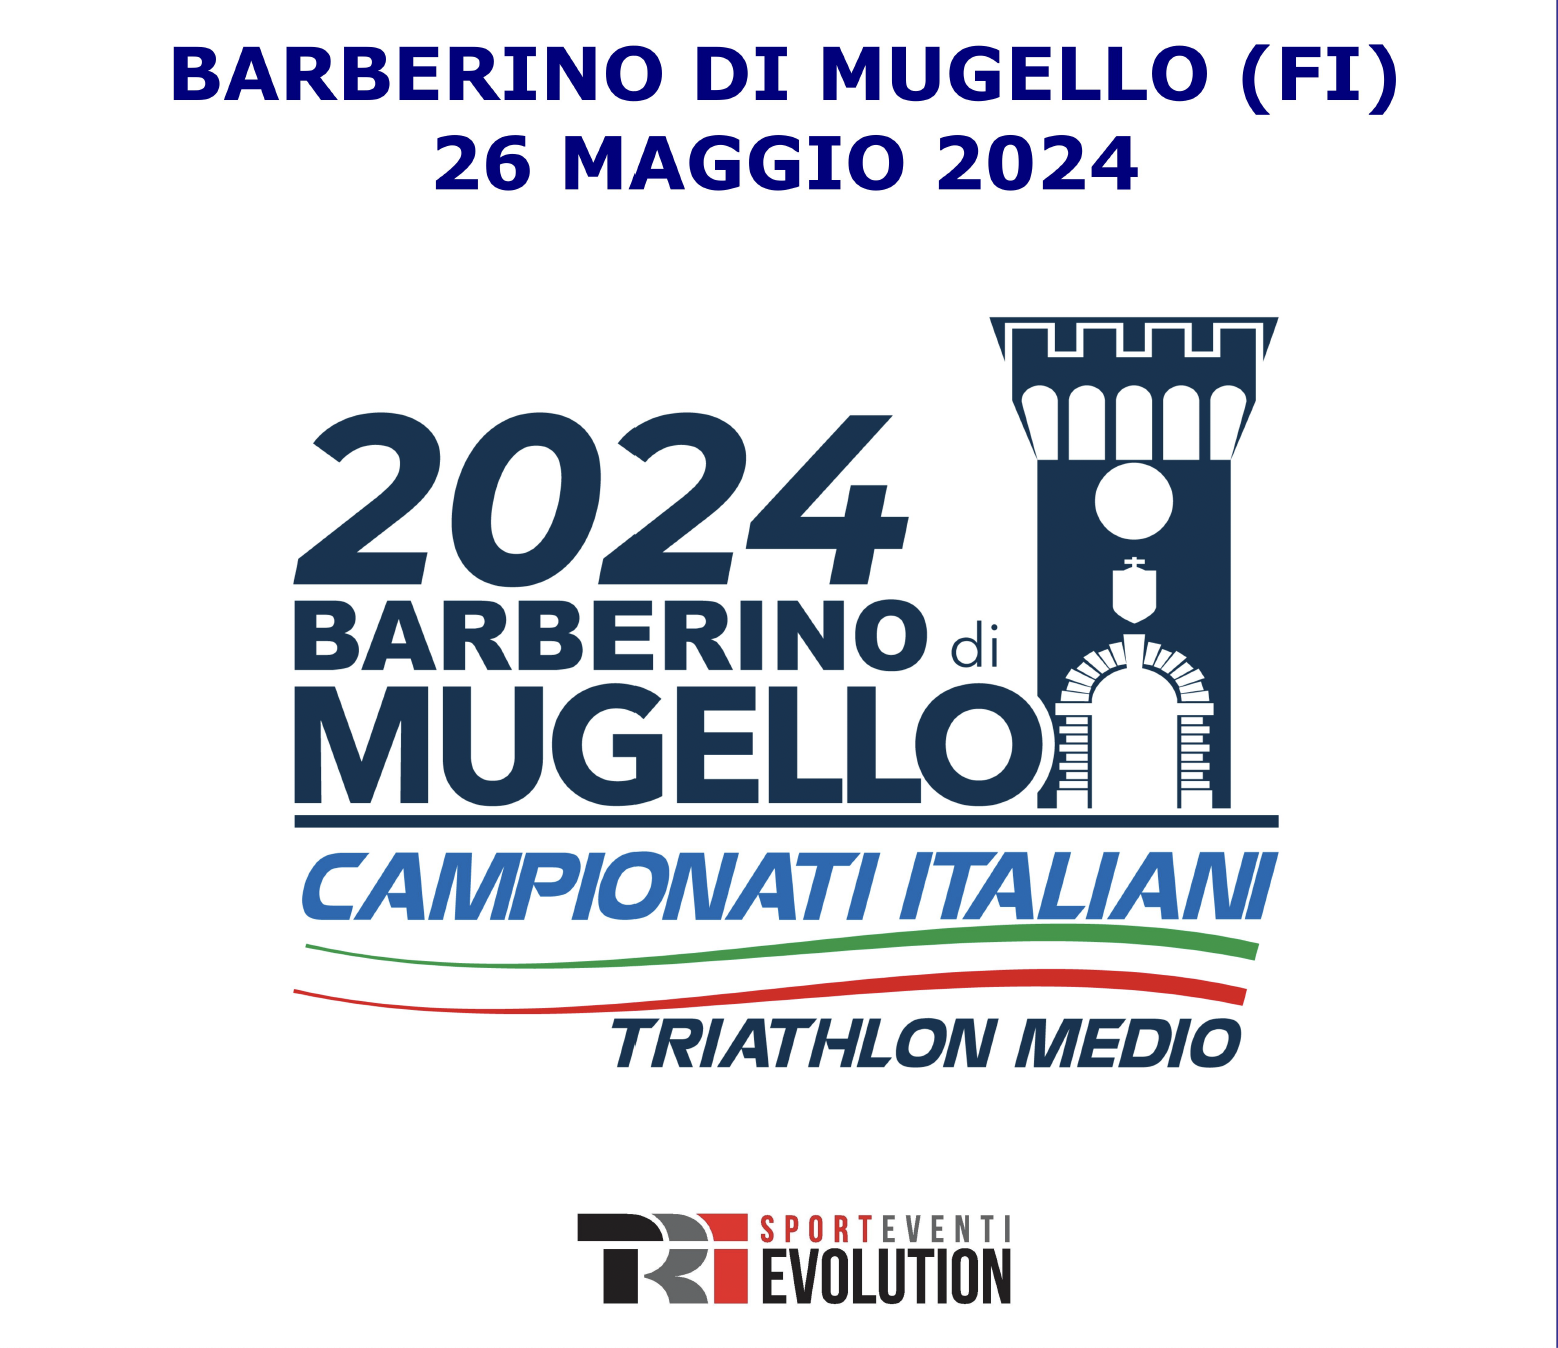 Campionati Italiani di Triathlon Medio: guida tecnica e percorsi gara